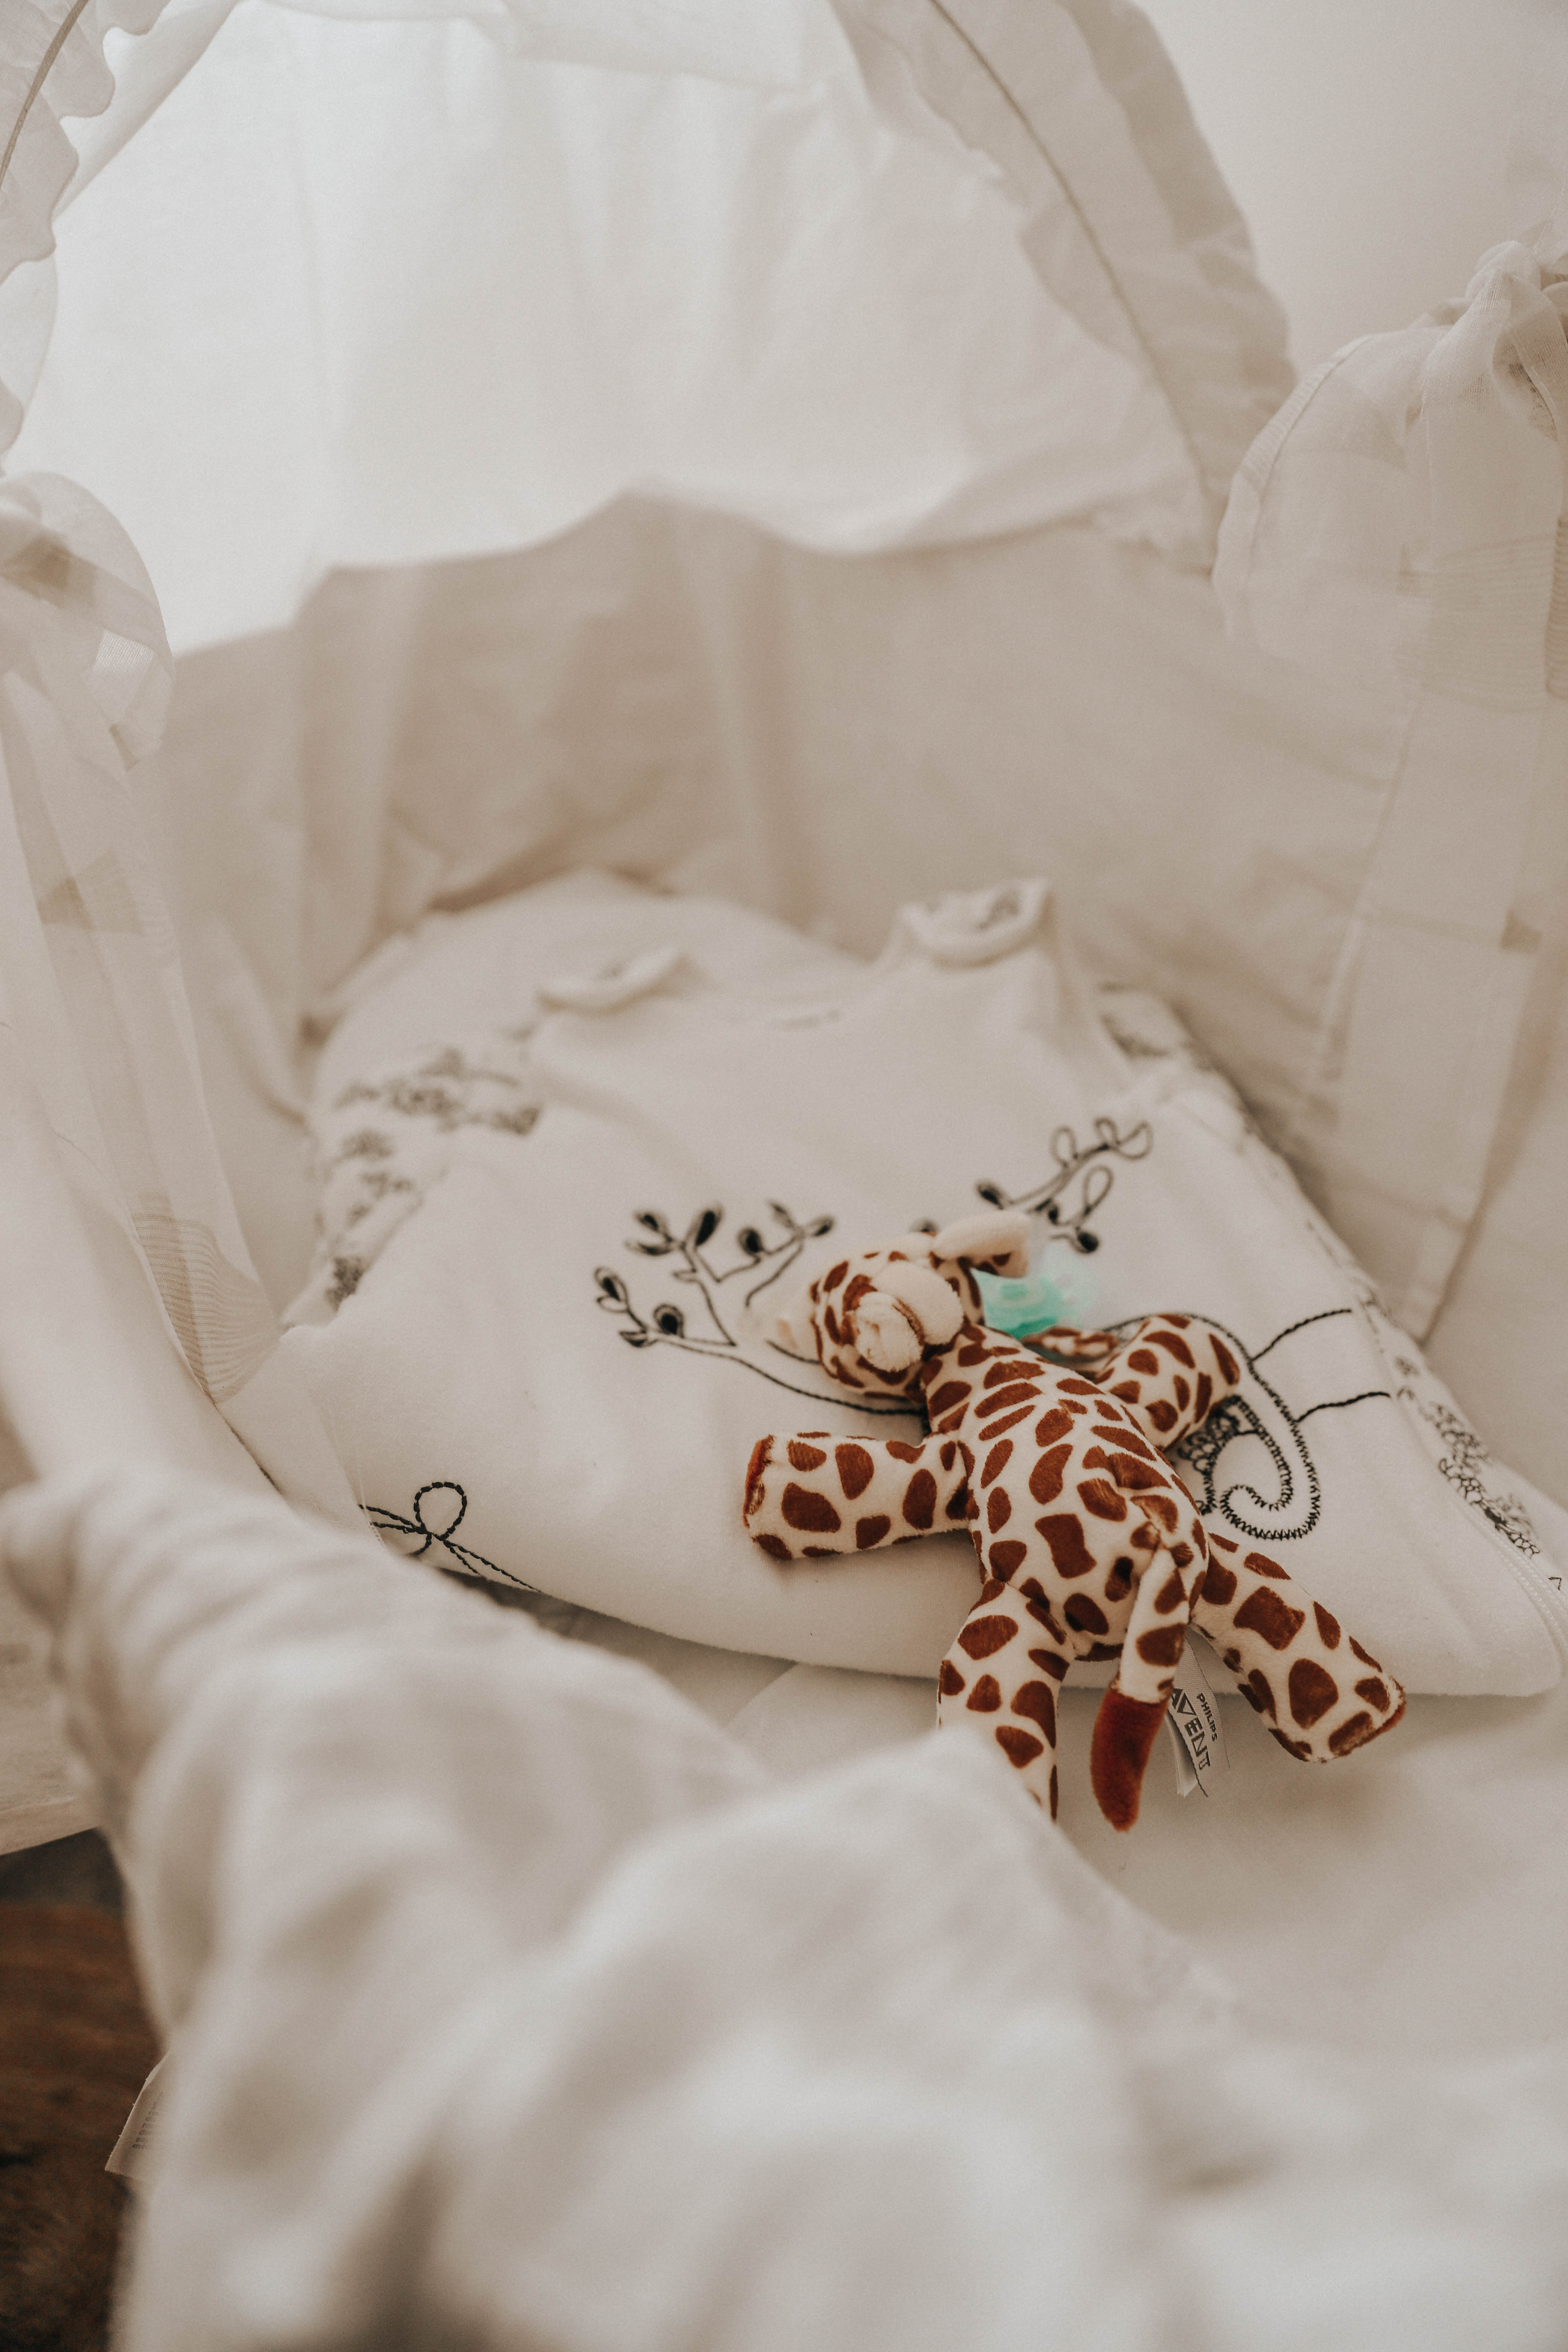 MON MODE | Toronto Blogger | Mom Blog | Restful Sleep Tips 